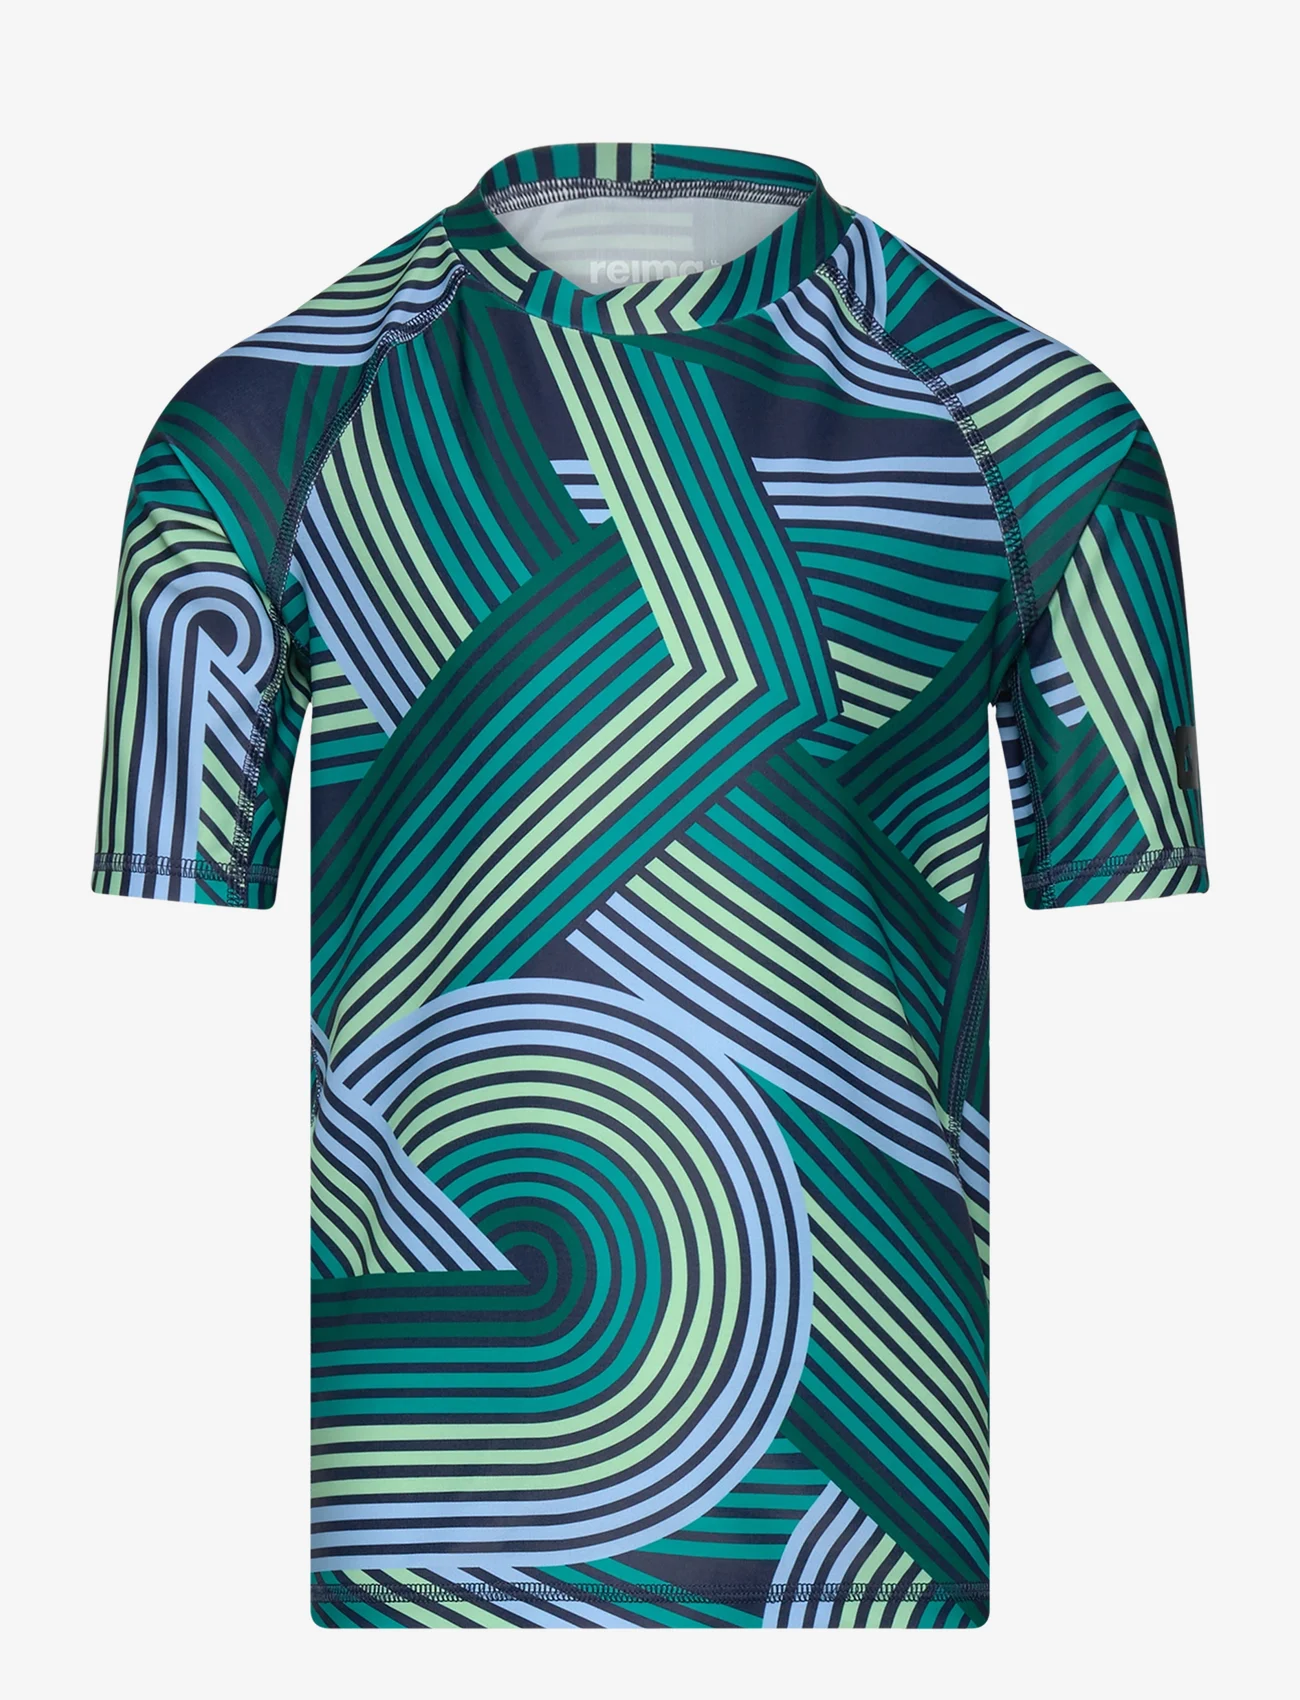 Reima - Swim shirt, Uiva - short-sleeved t-shirts - navy/green - 0